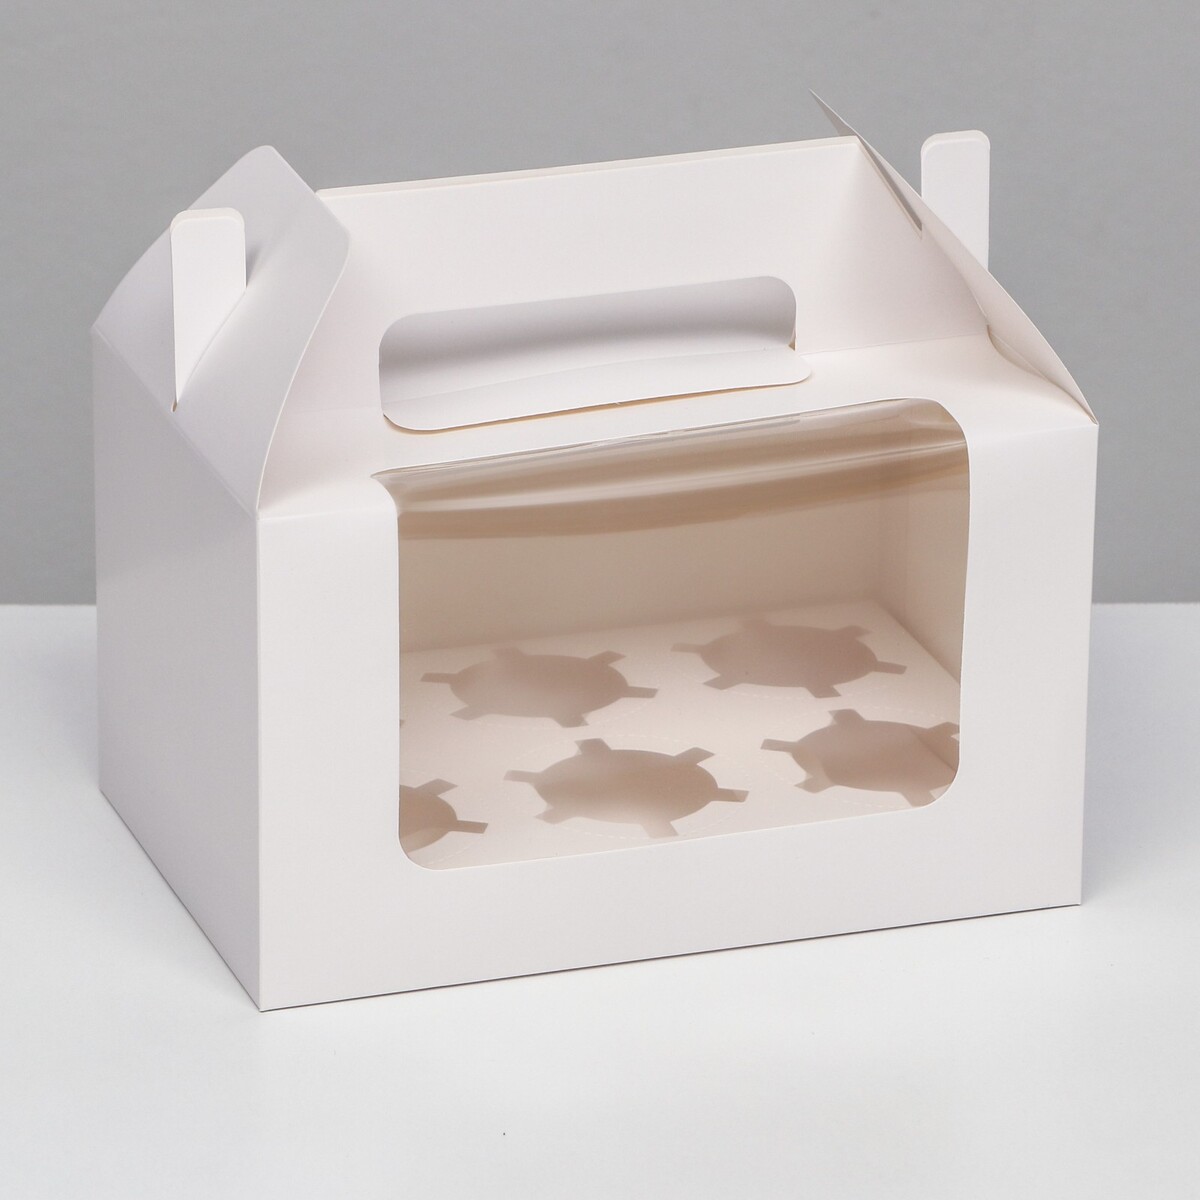 Кондитерская складная коробка для 6 капкейков, белая 23,5 х 16 х 14 см кондитерская складная коробка для 6 капкейков 23 5 х 16 х 10 розовая